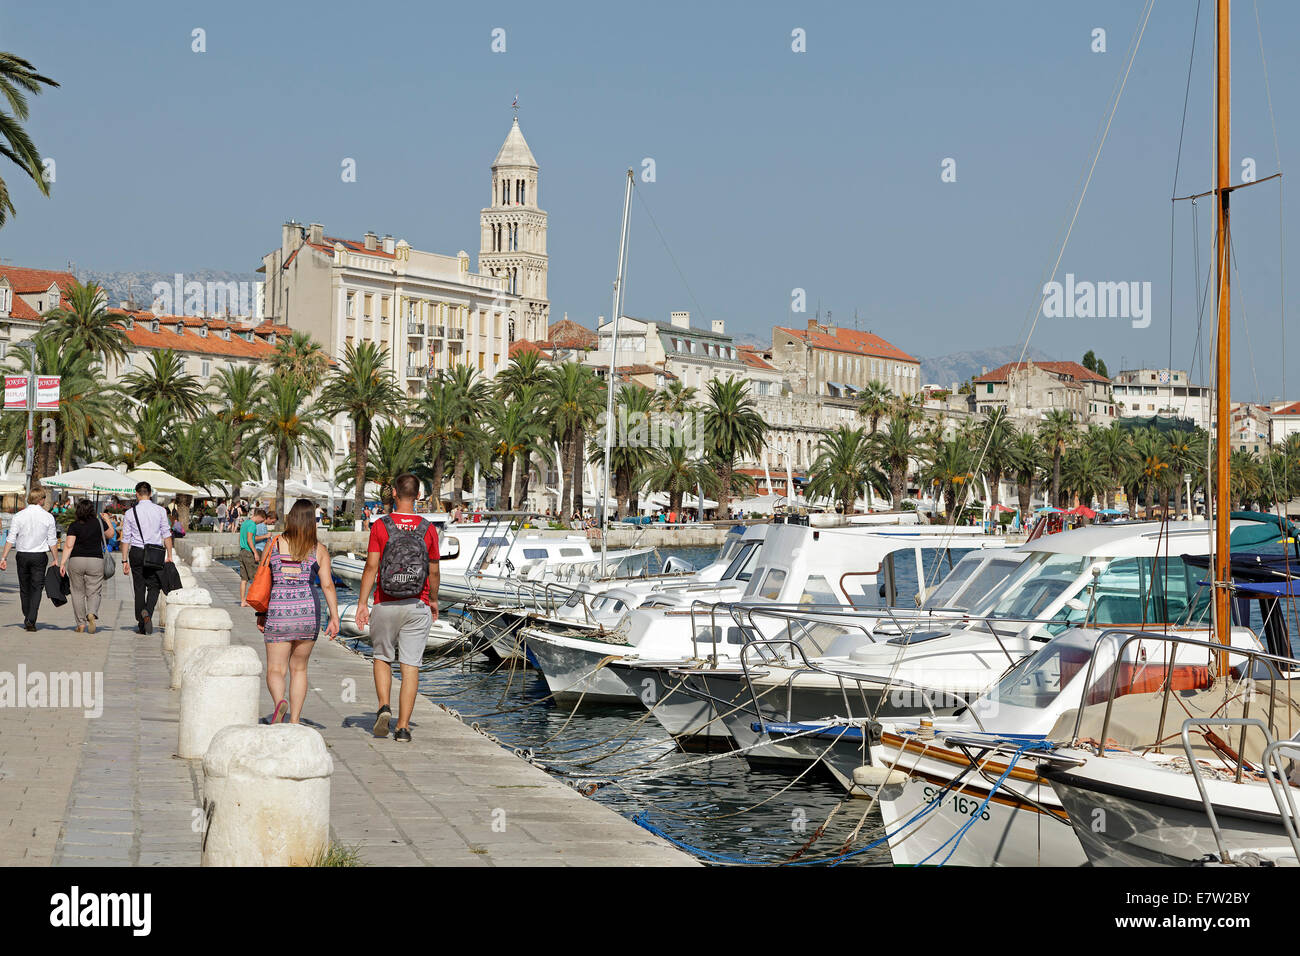 seafront and marina, Split, Dalmatia, Croatia Stock Photo